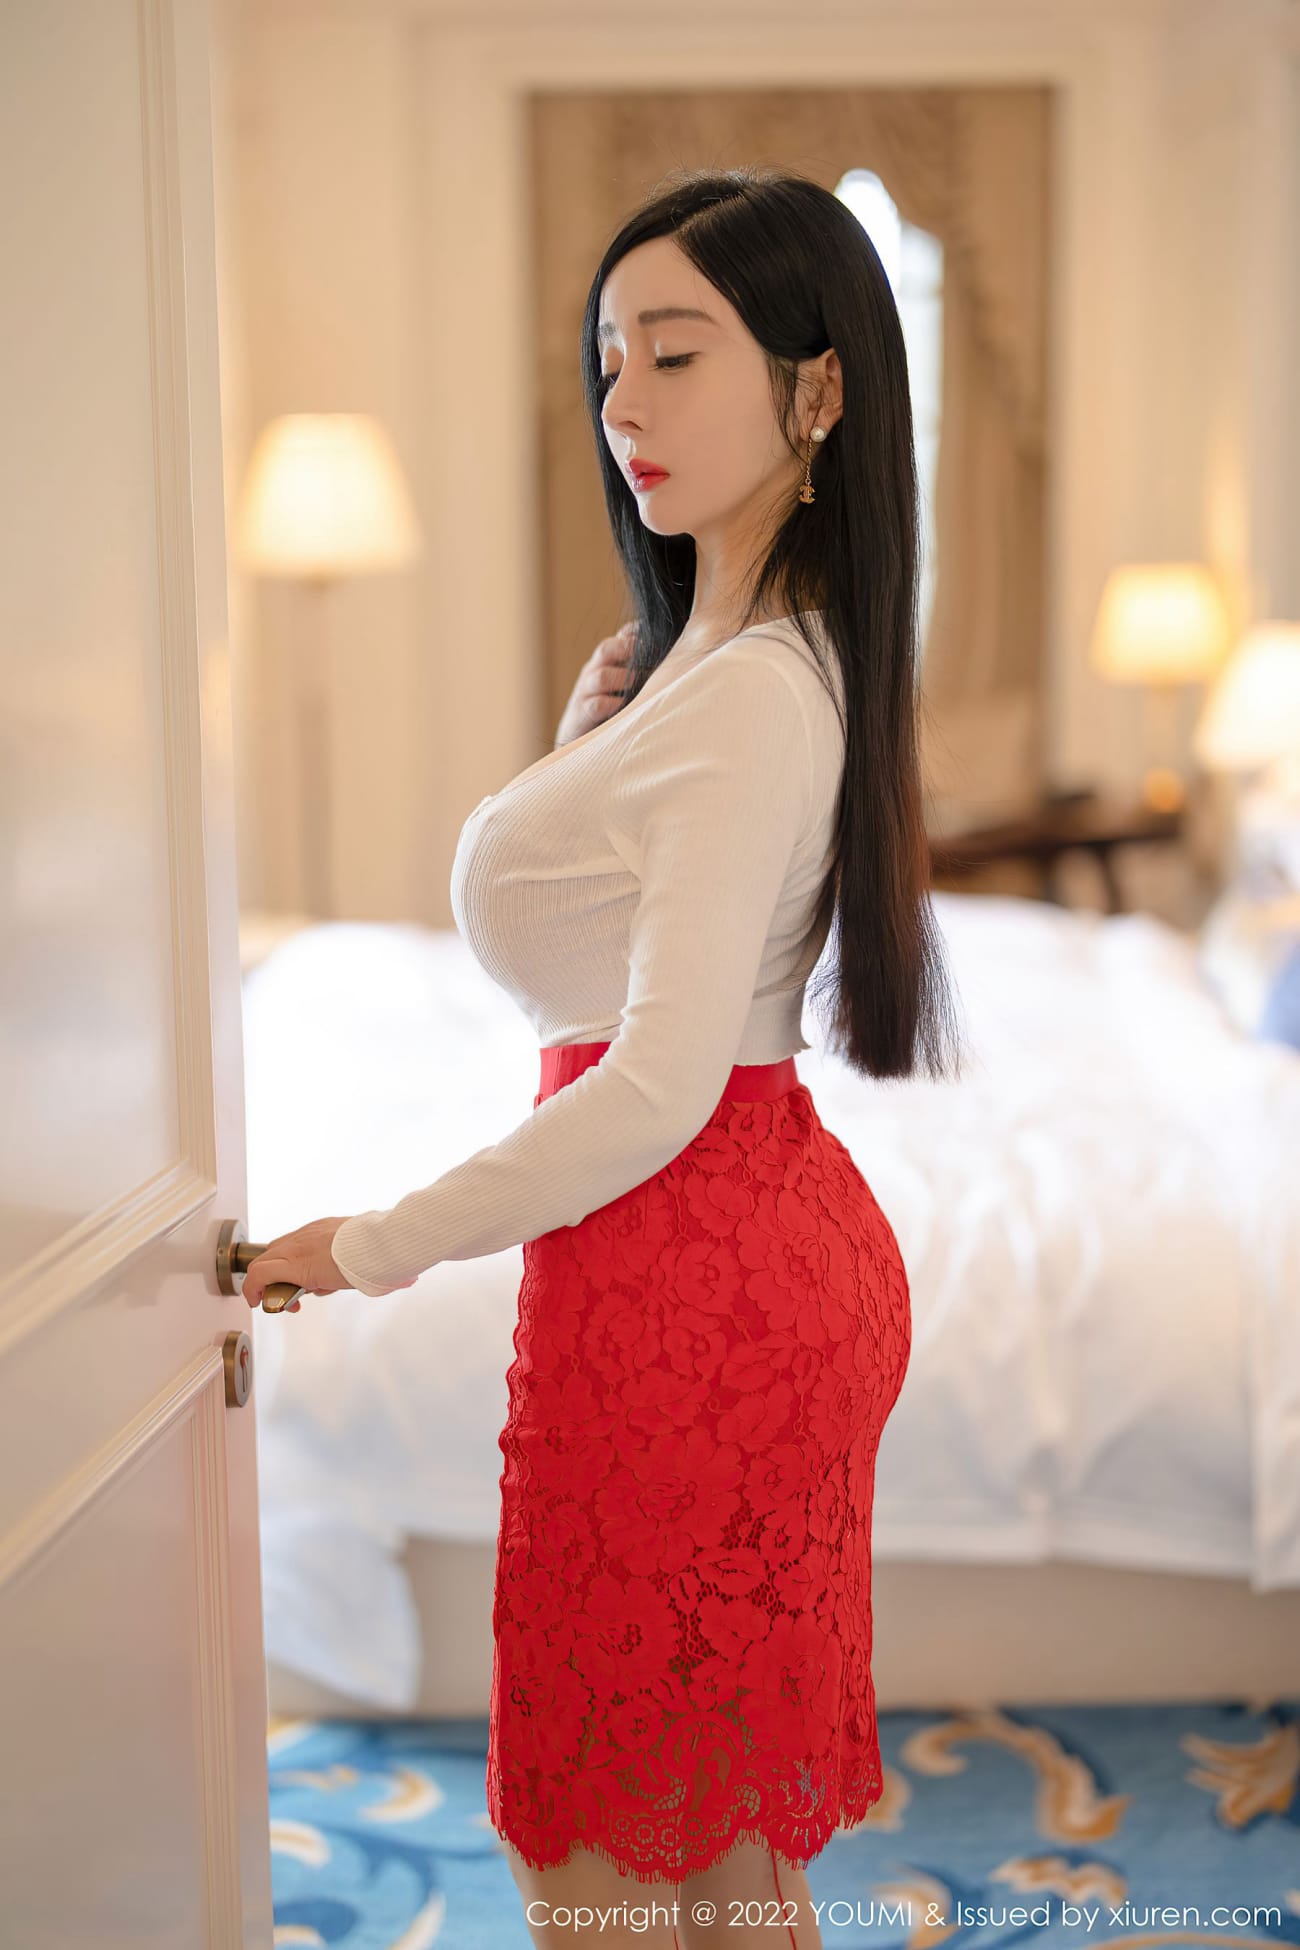 美女模特允薾红色包臀裙原色丝袜酒店场景性感写真